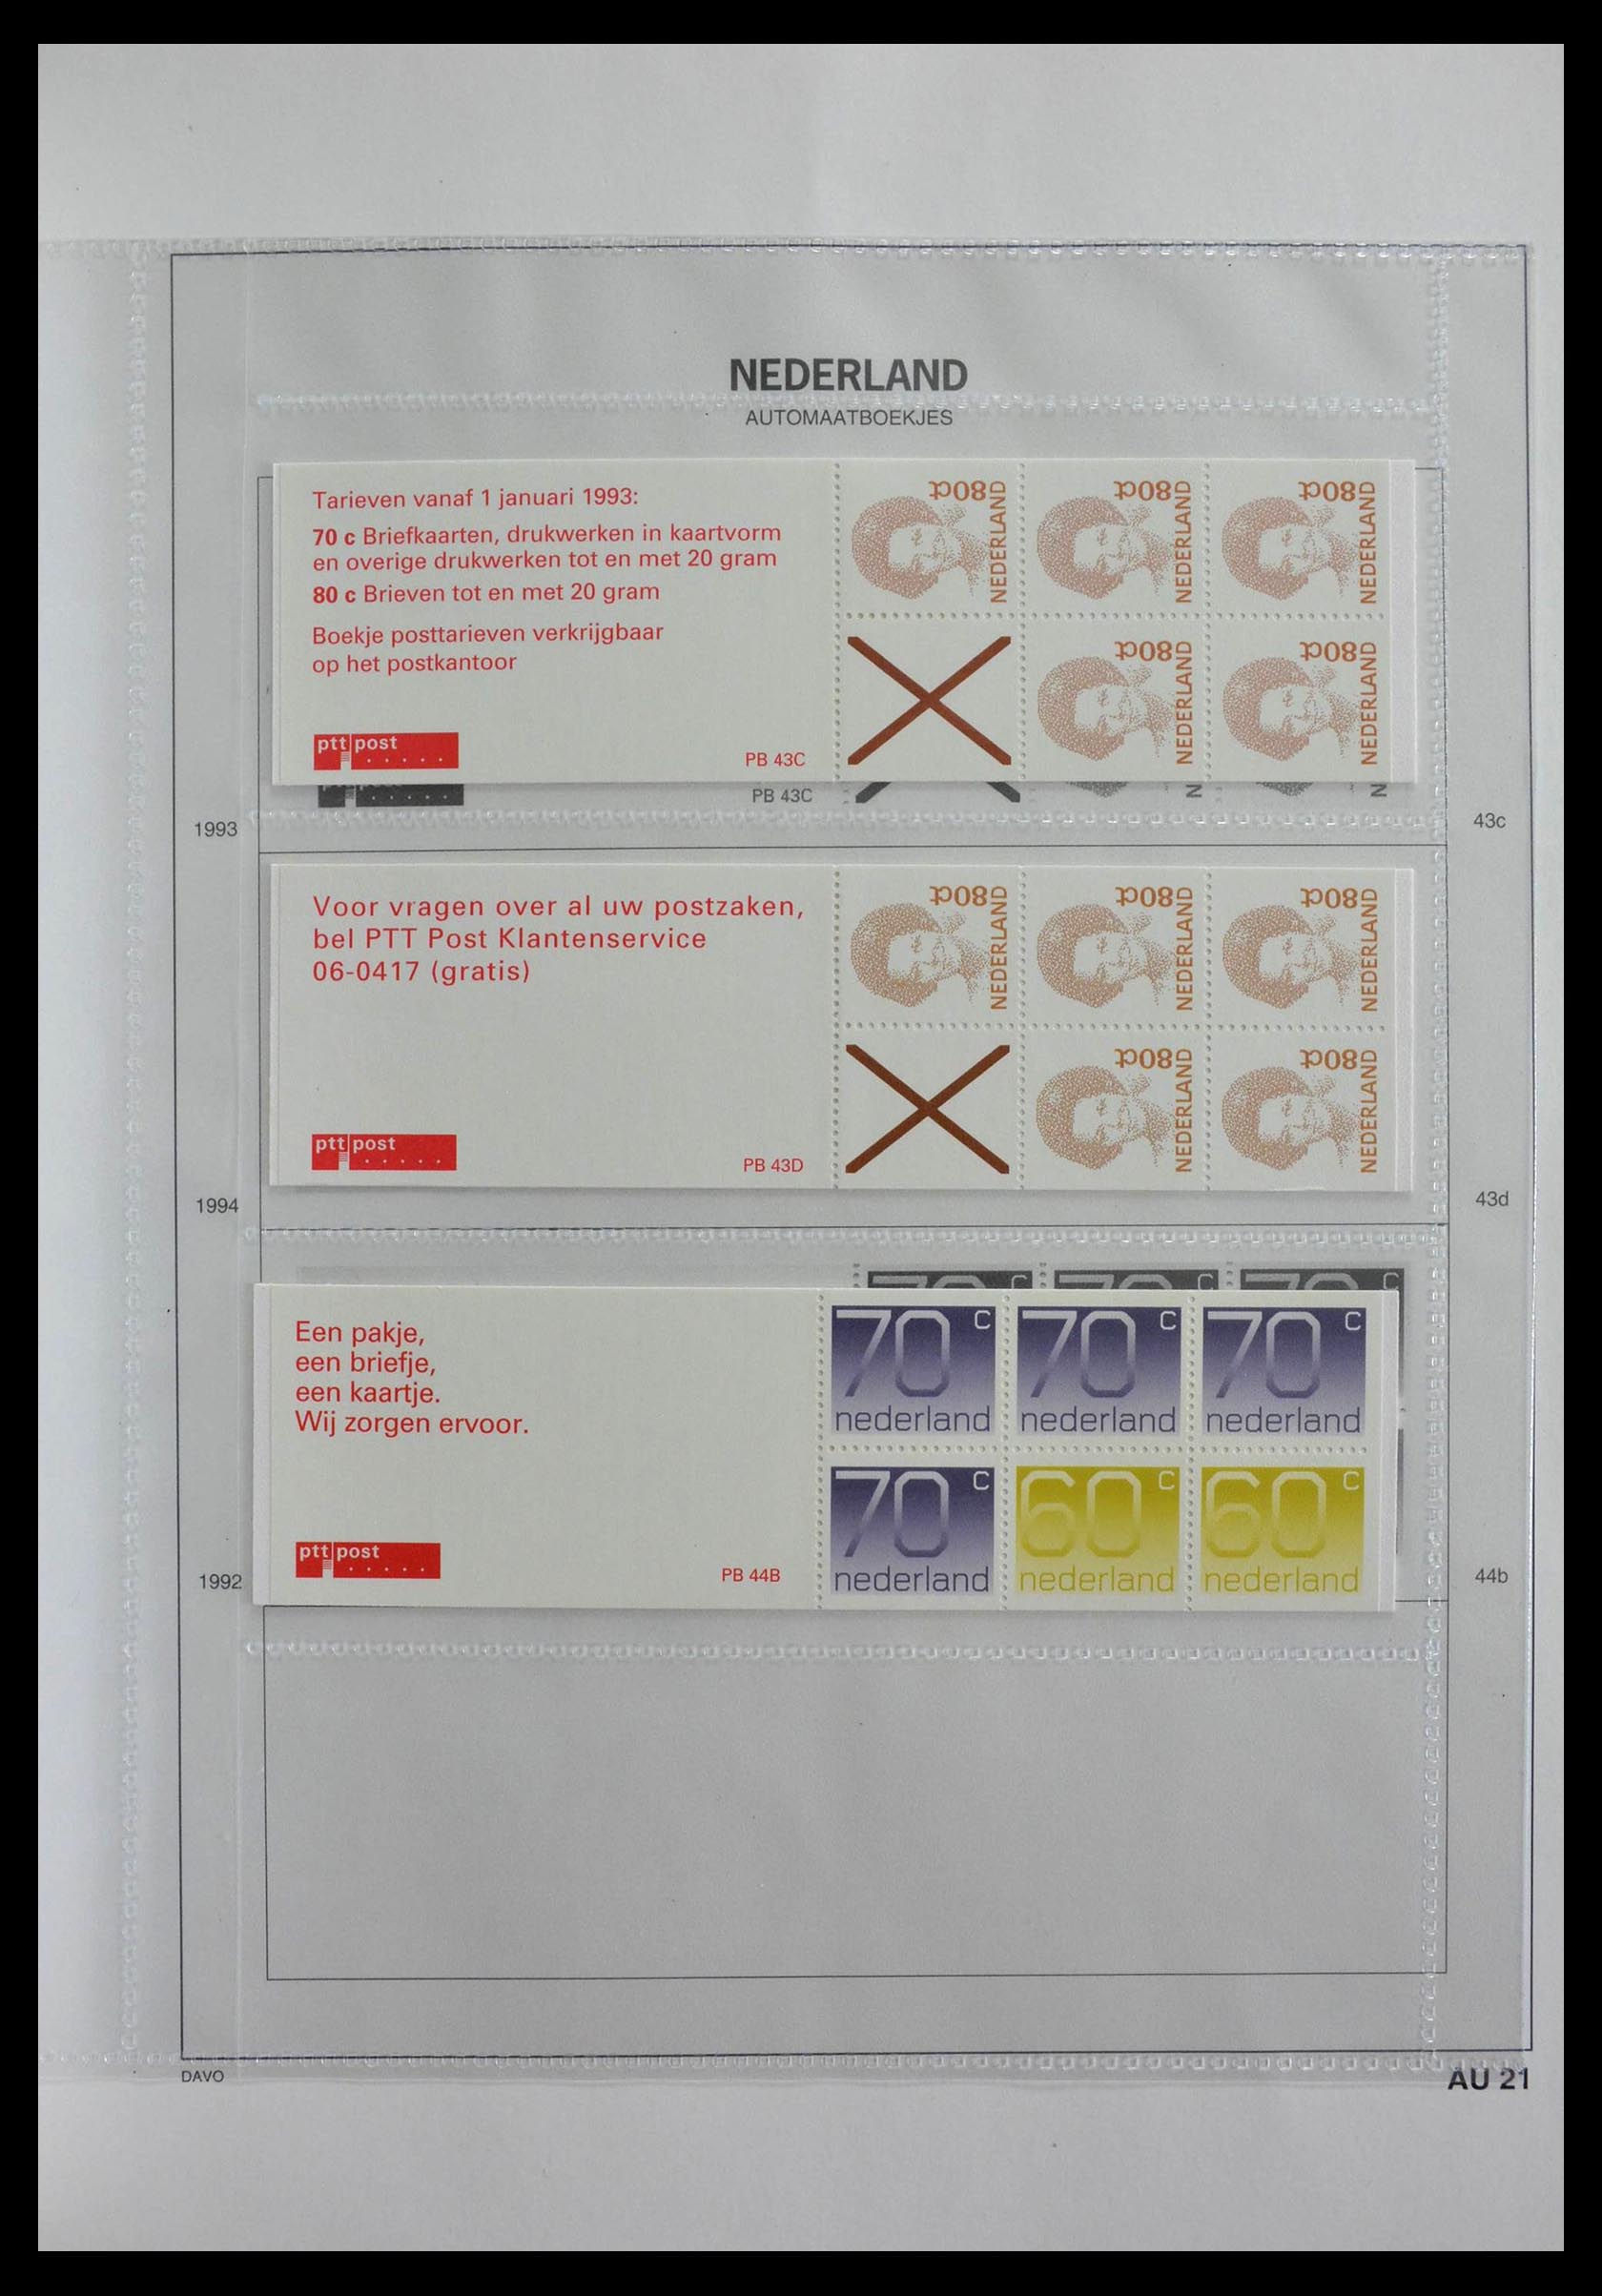 28853 021 - 28853 Netherlands stampbooklets 1964-2005.